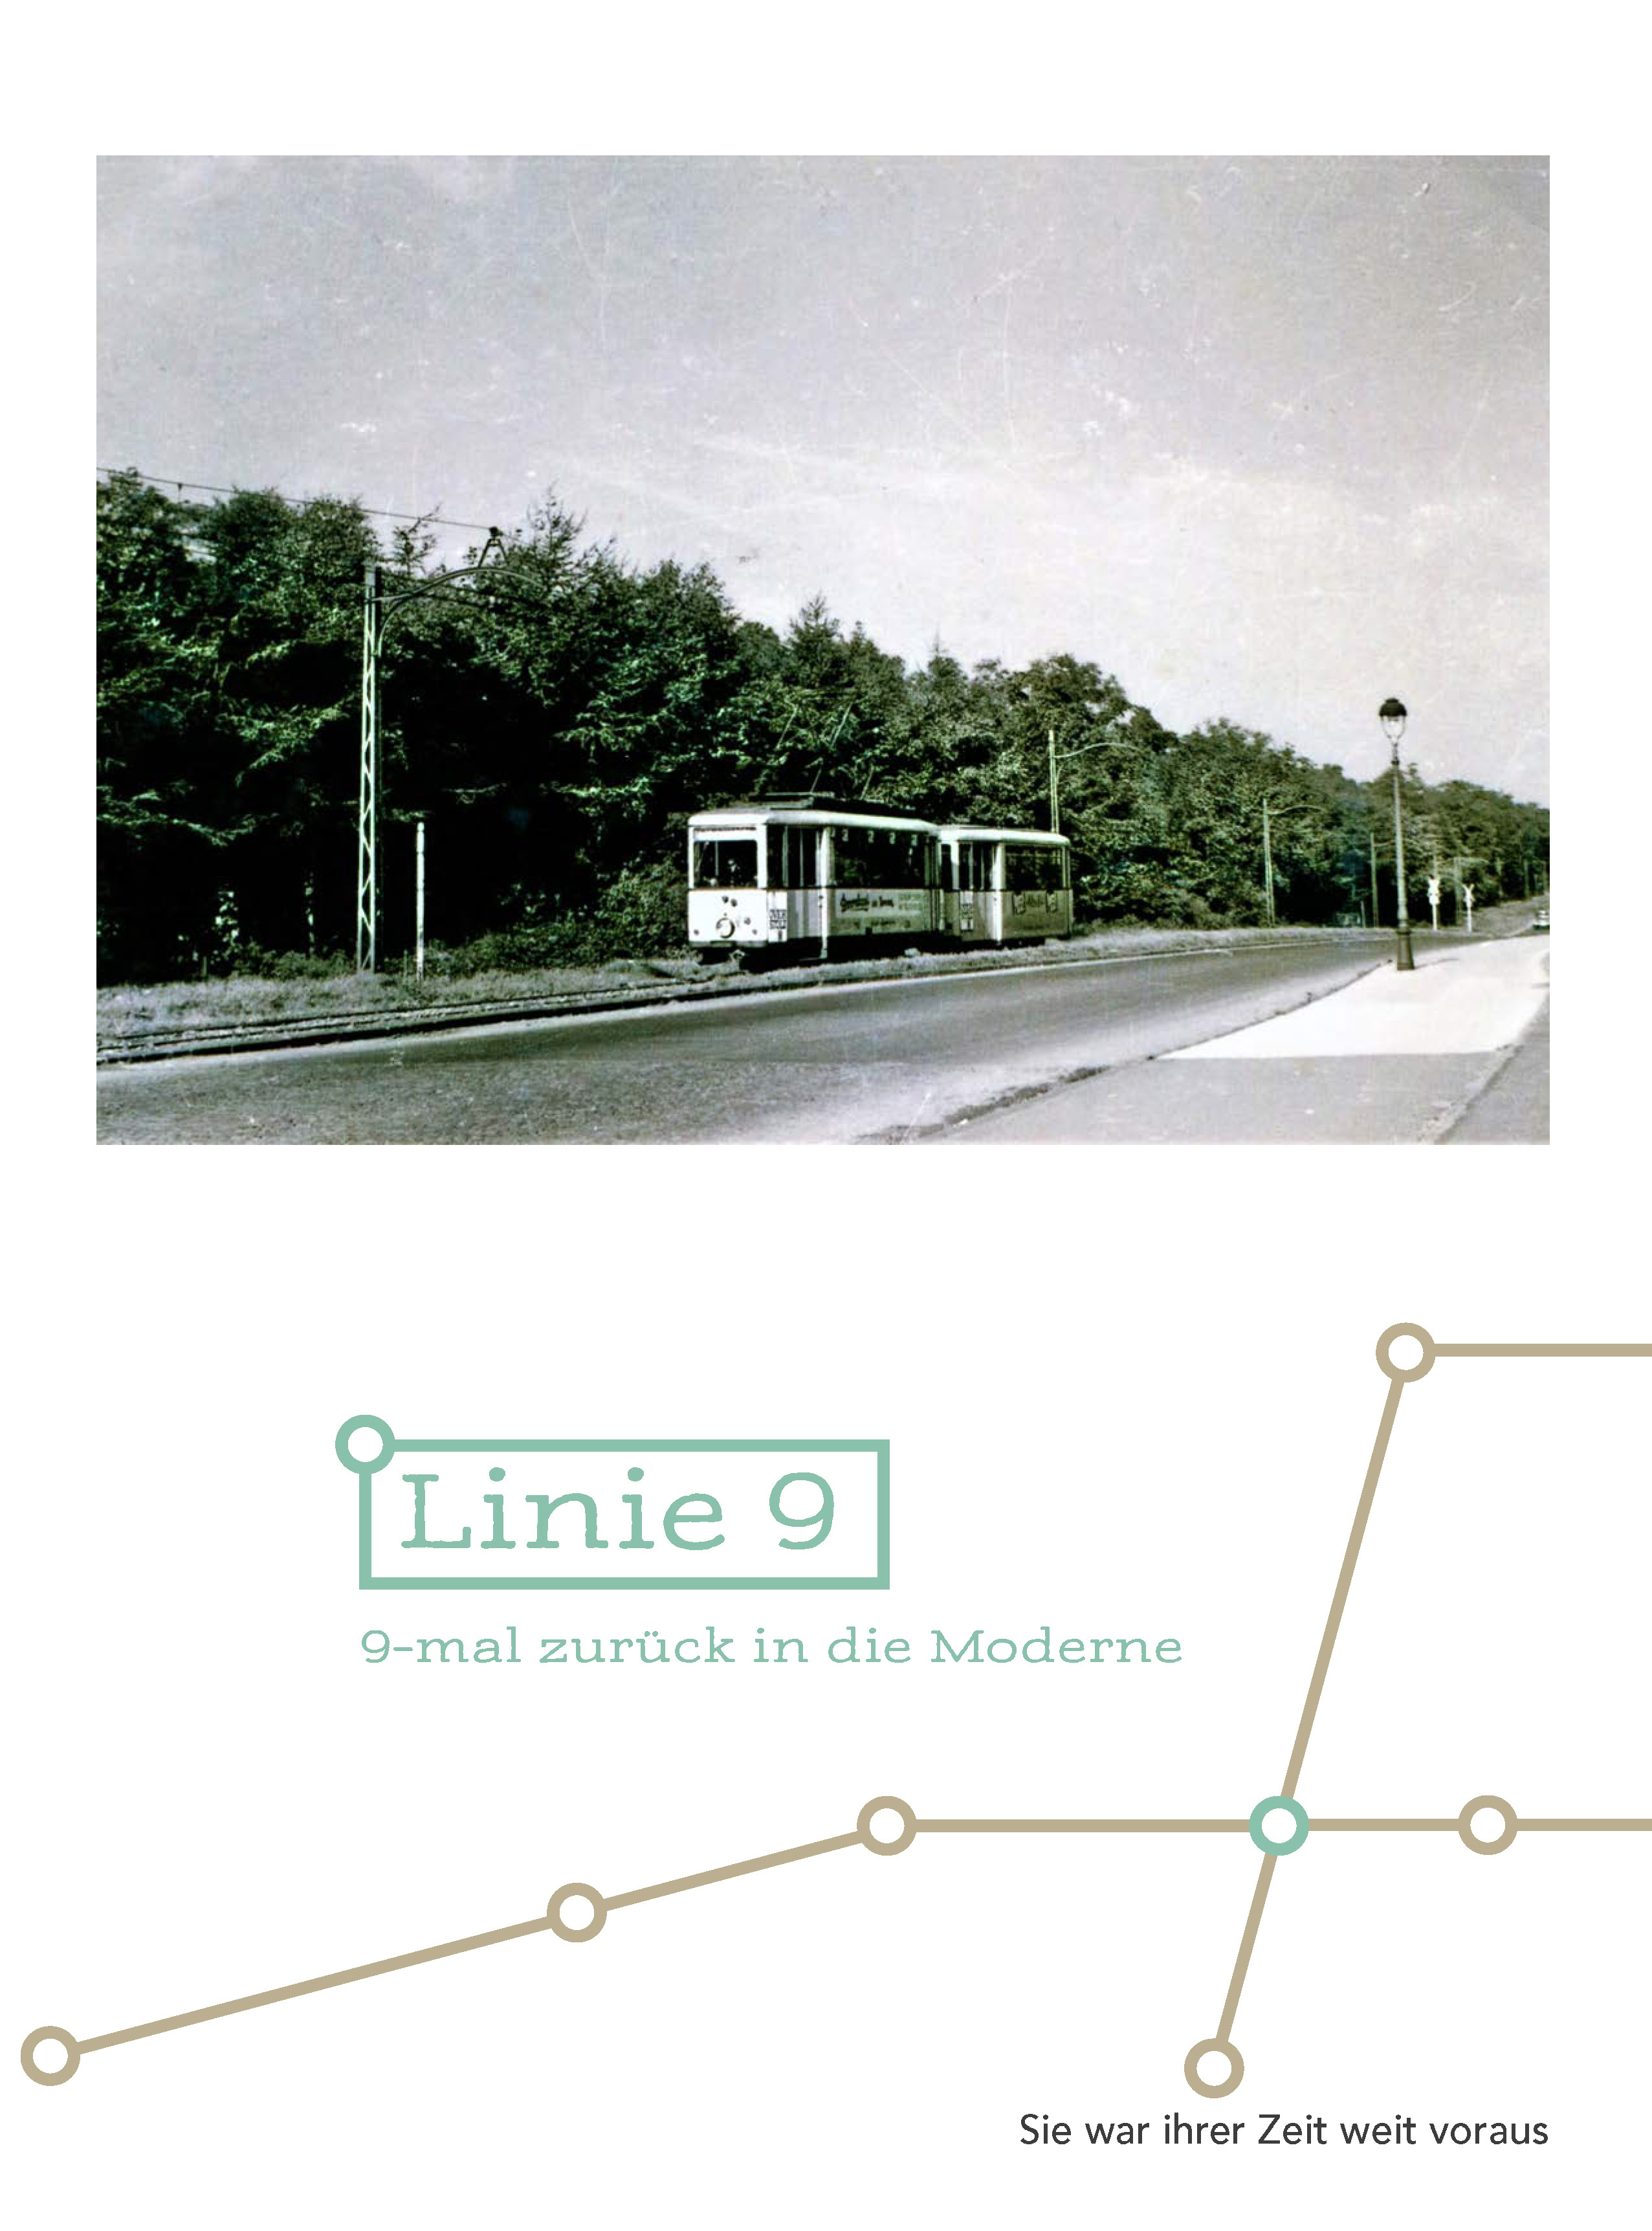 Linie 9